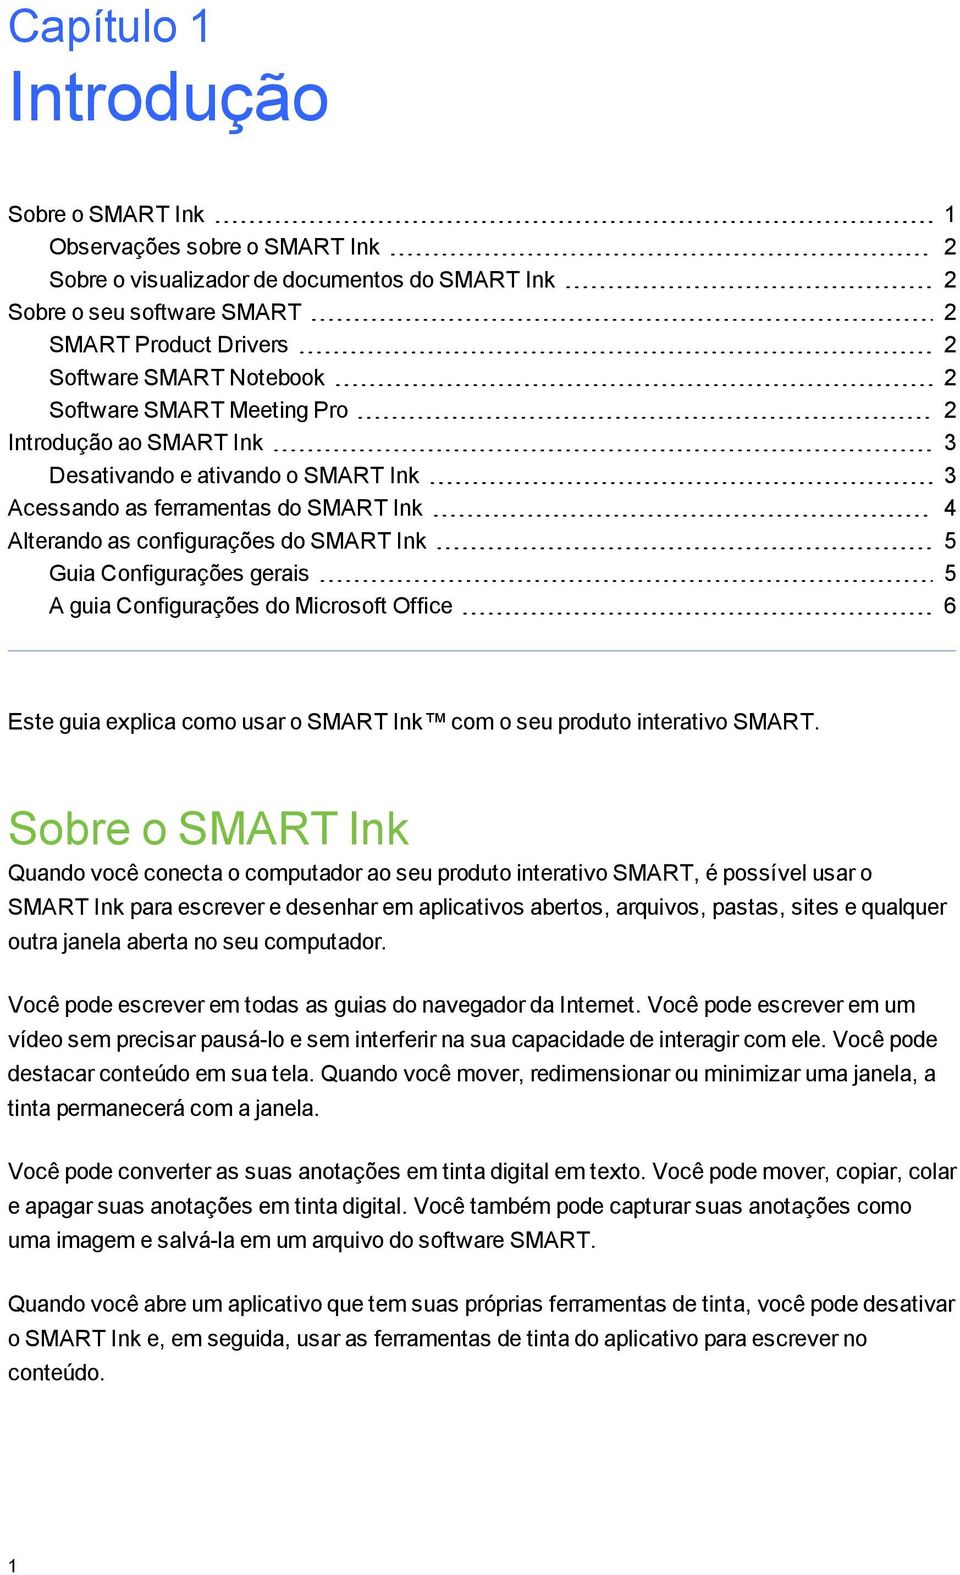 Confiurações erais 5 A uia Confiurações do Microsoft Office 6 Este uia explica como usar o SMART Ink com o seu produto interativo SMART.